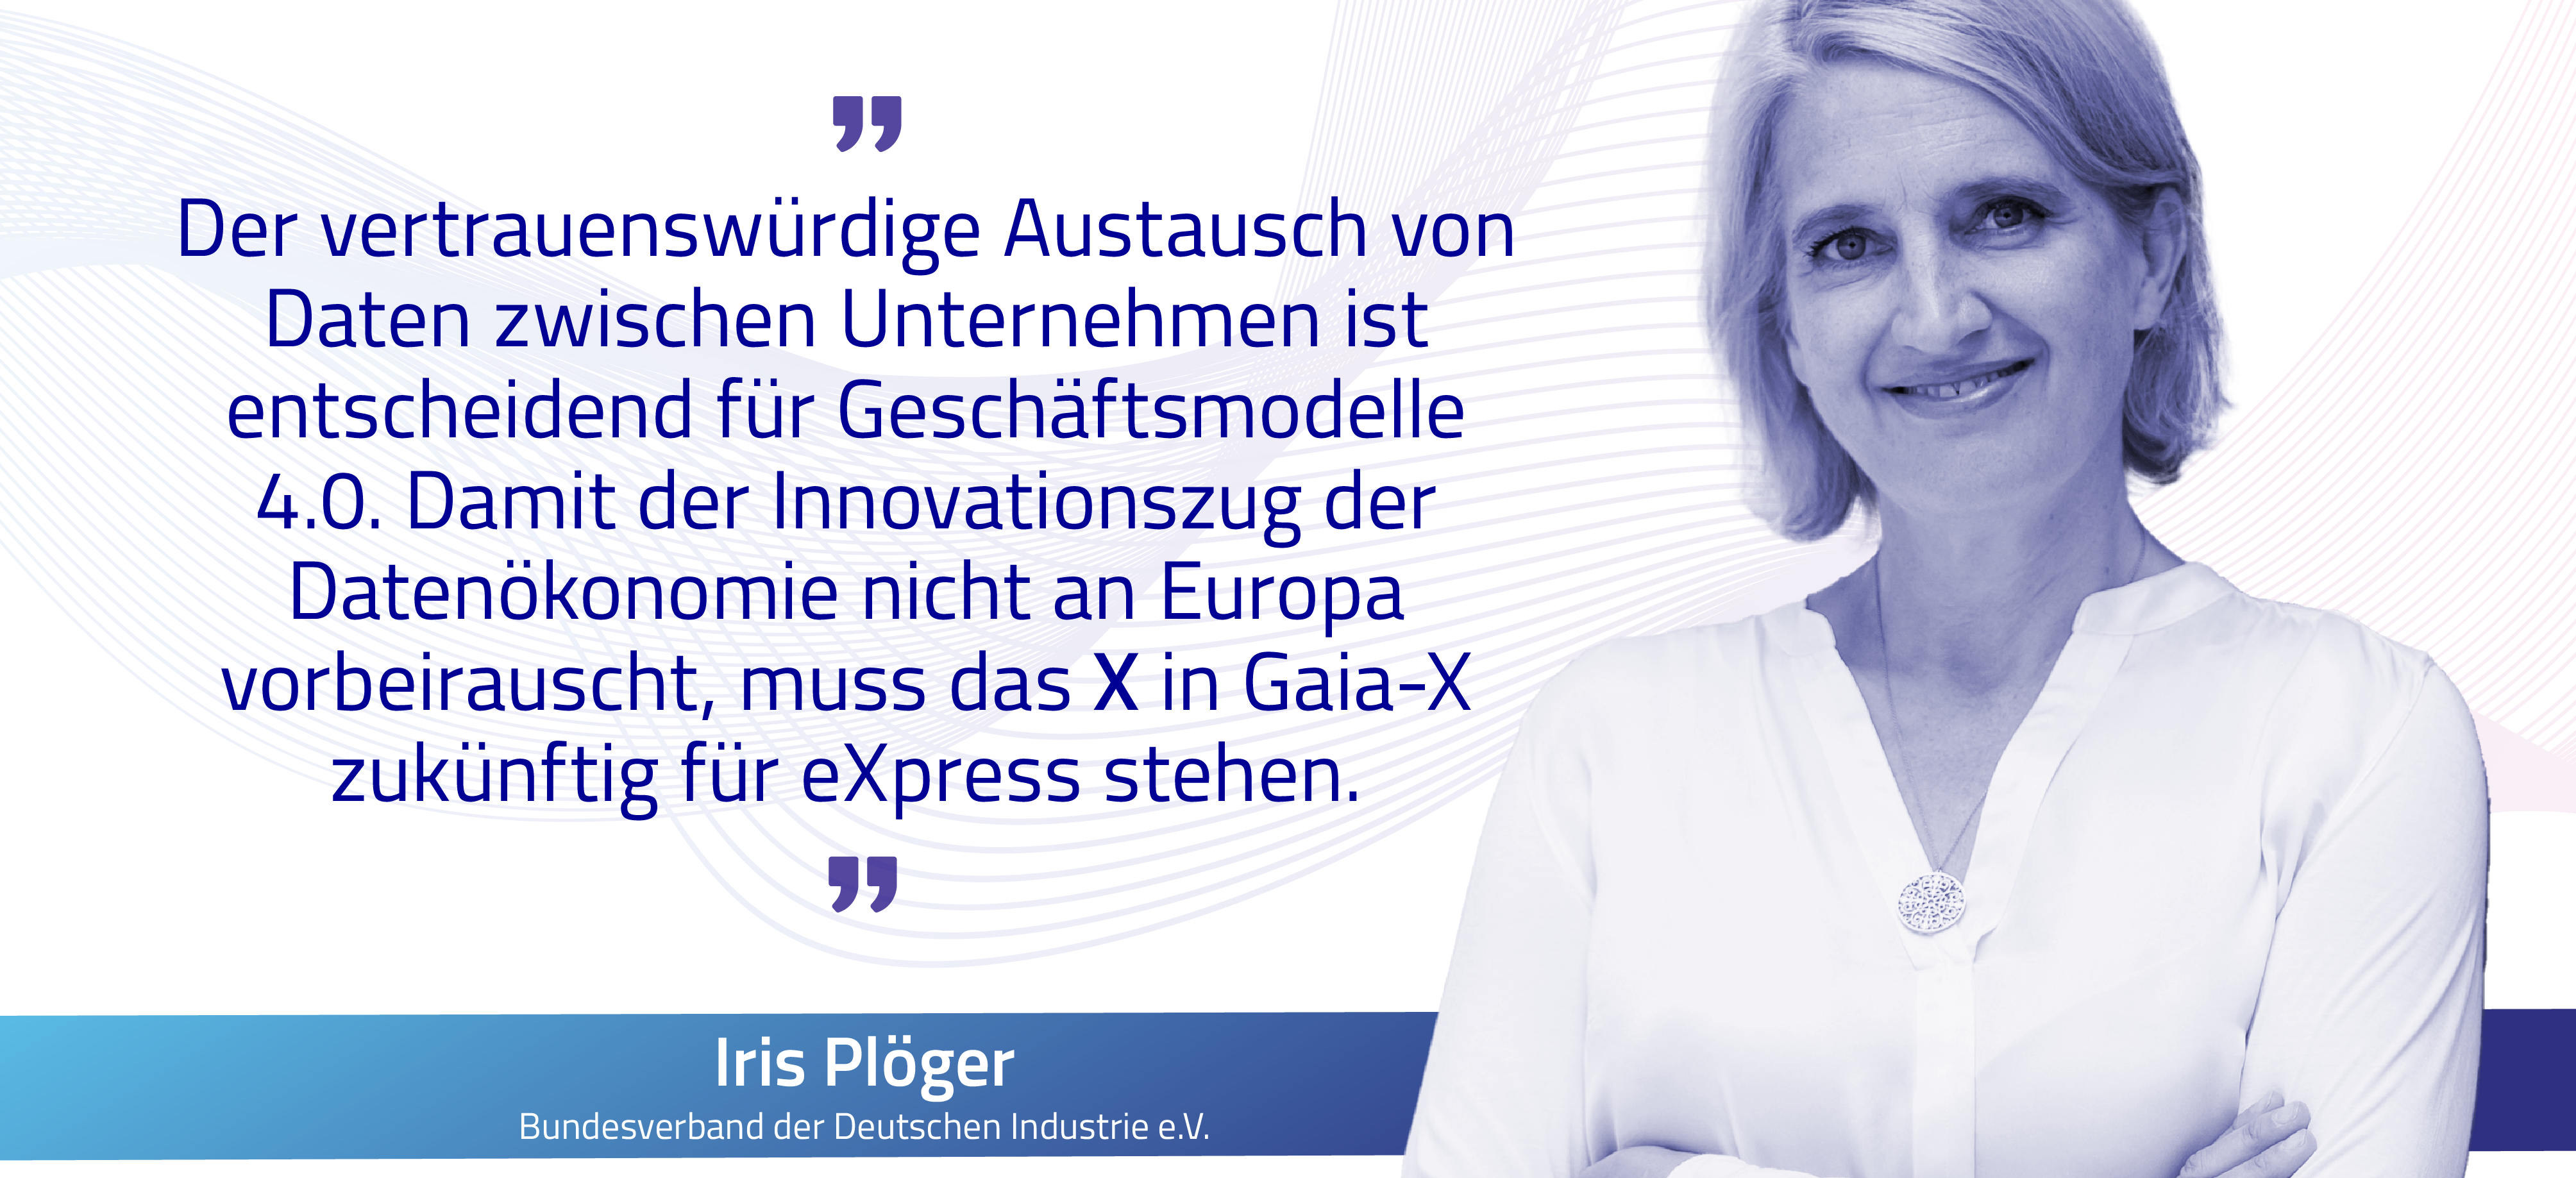 Iris Plöger